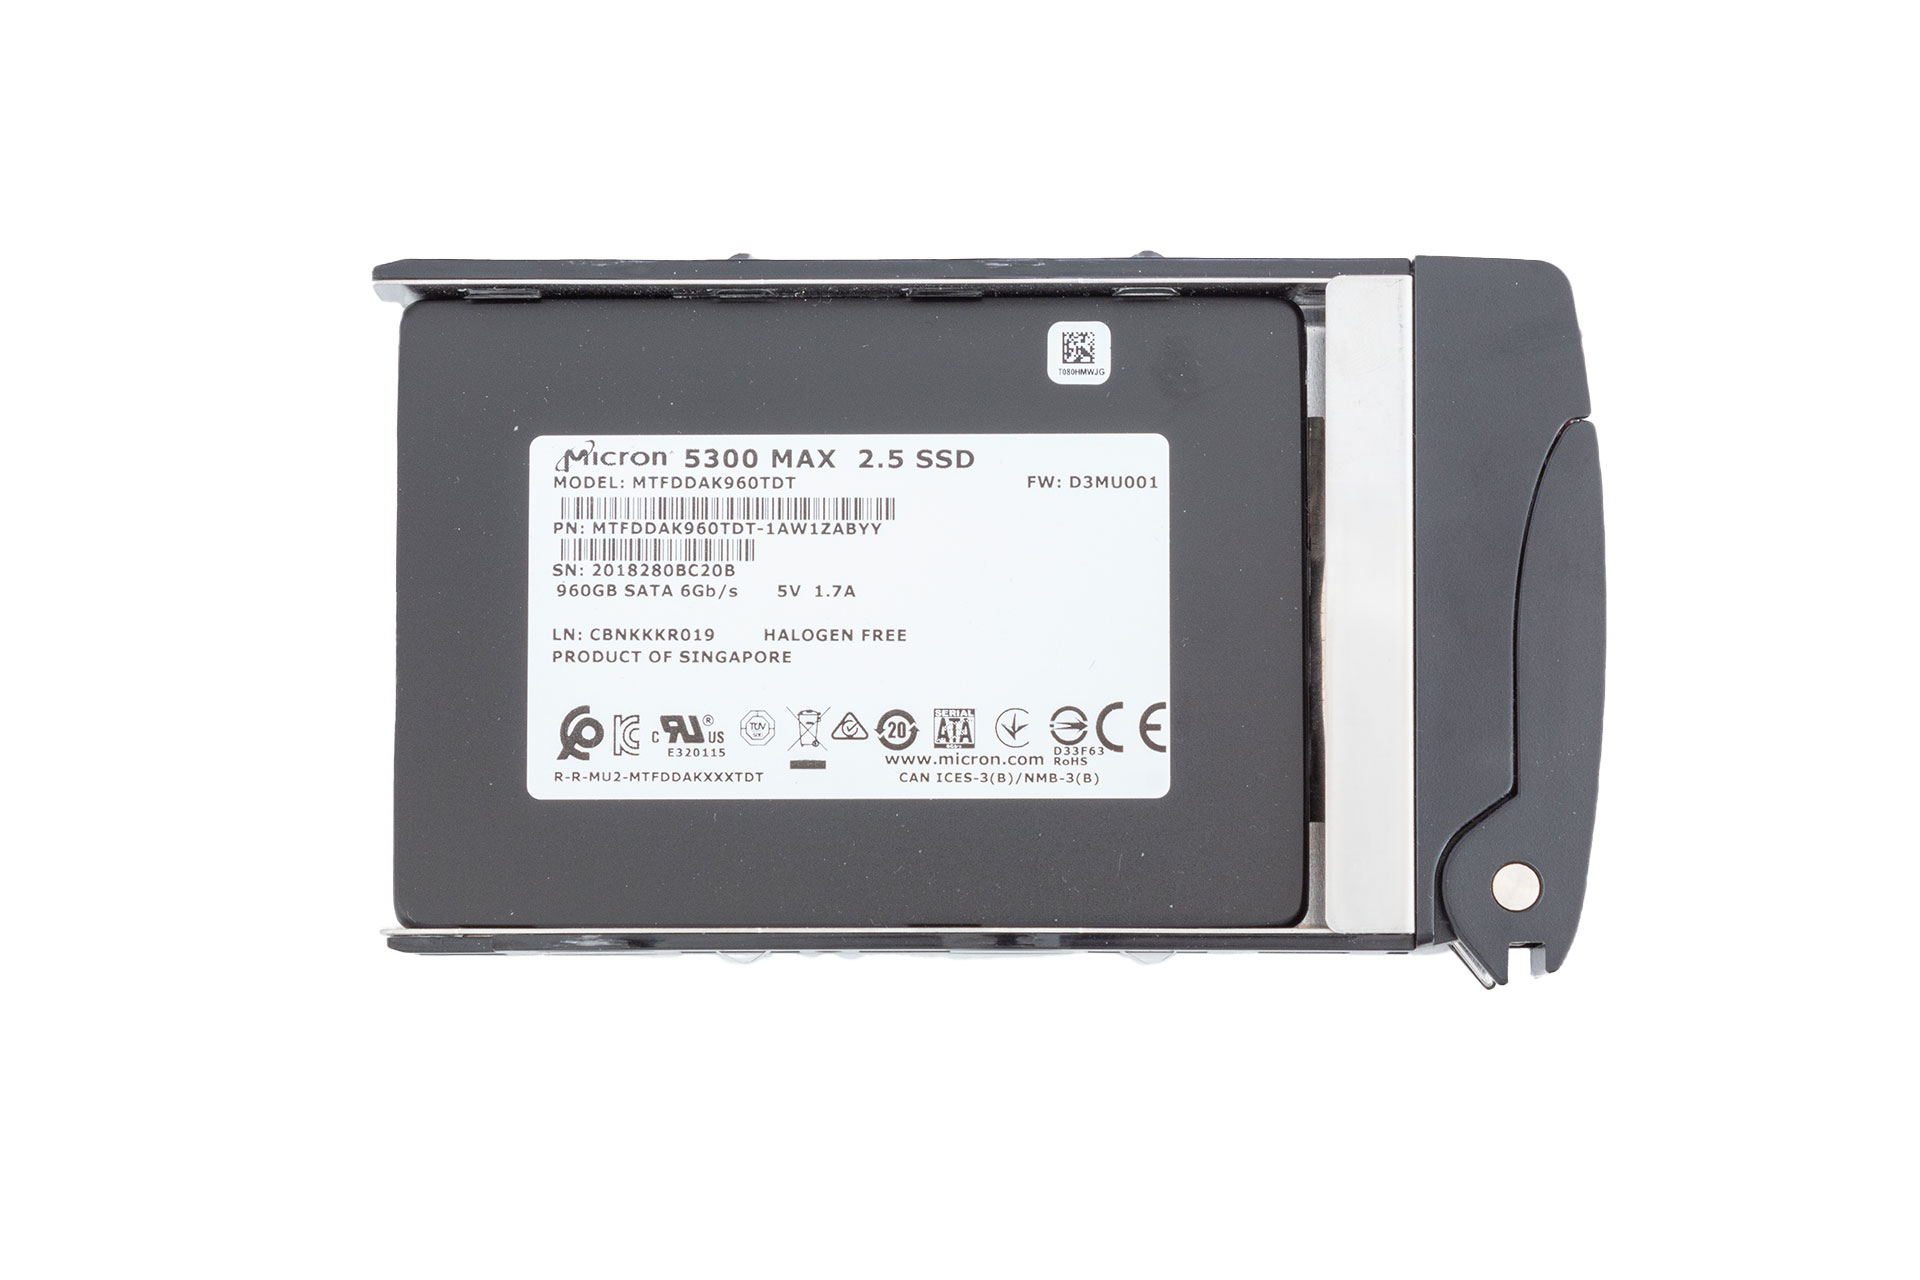 Micron SSD 960GB 6G SATA 2.5", Supermicro Carrier